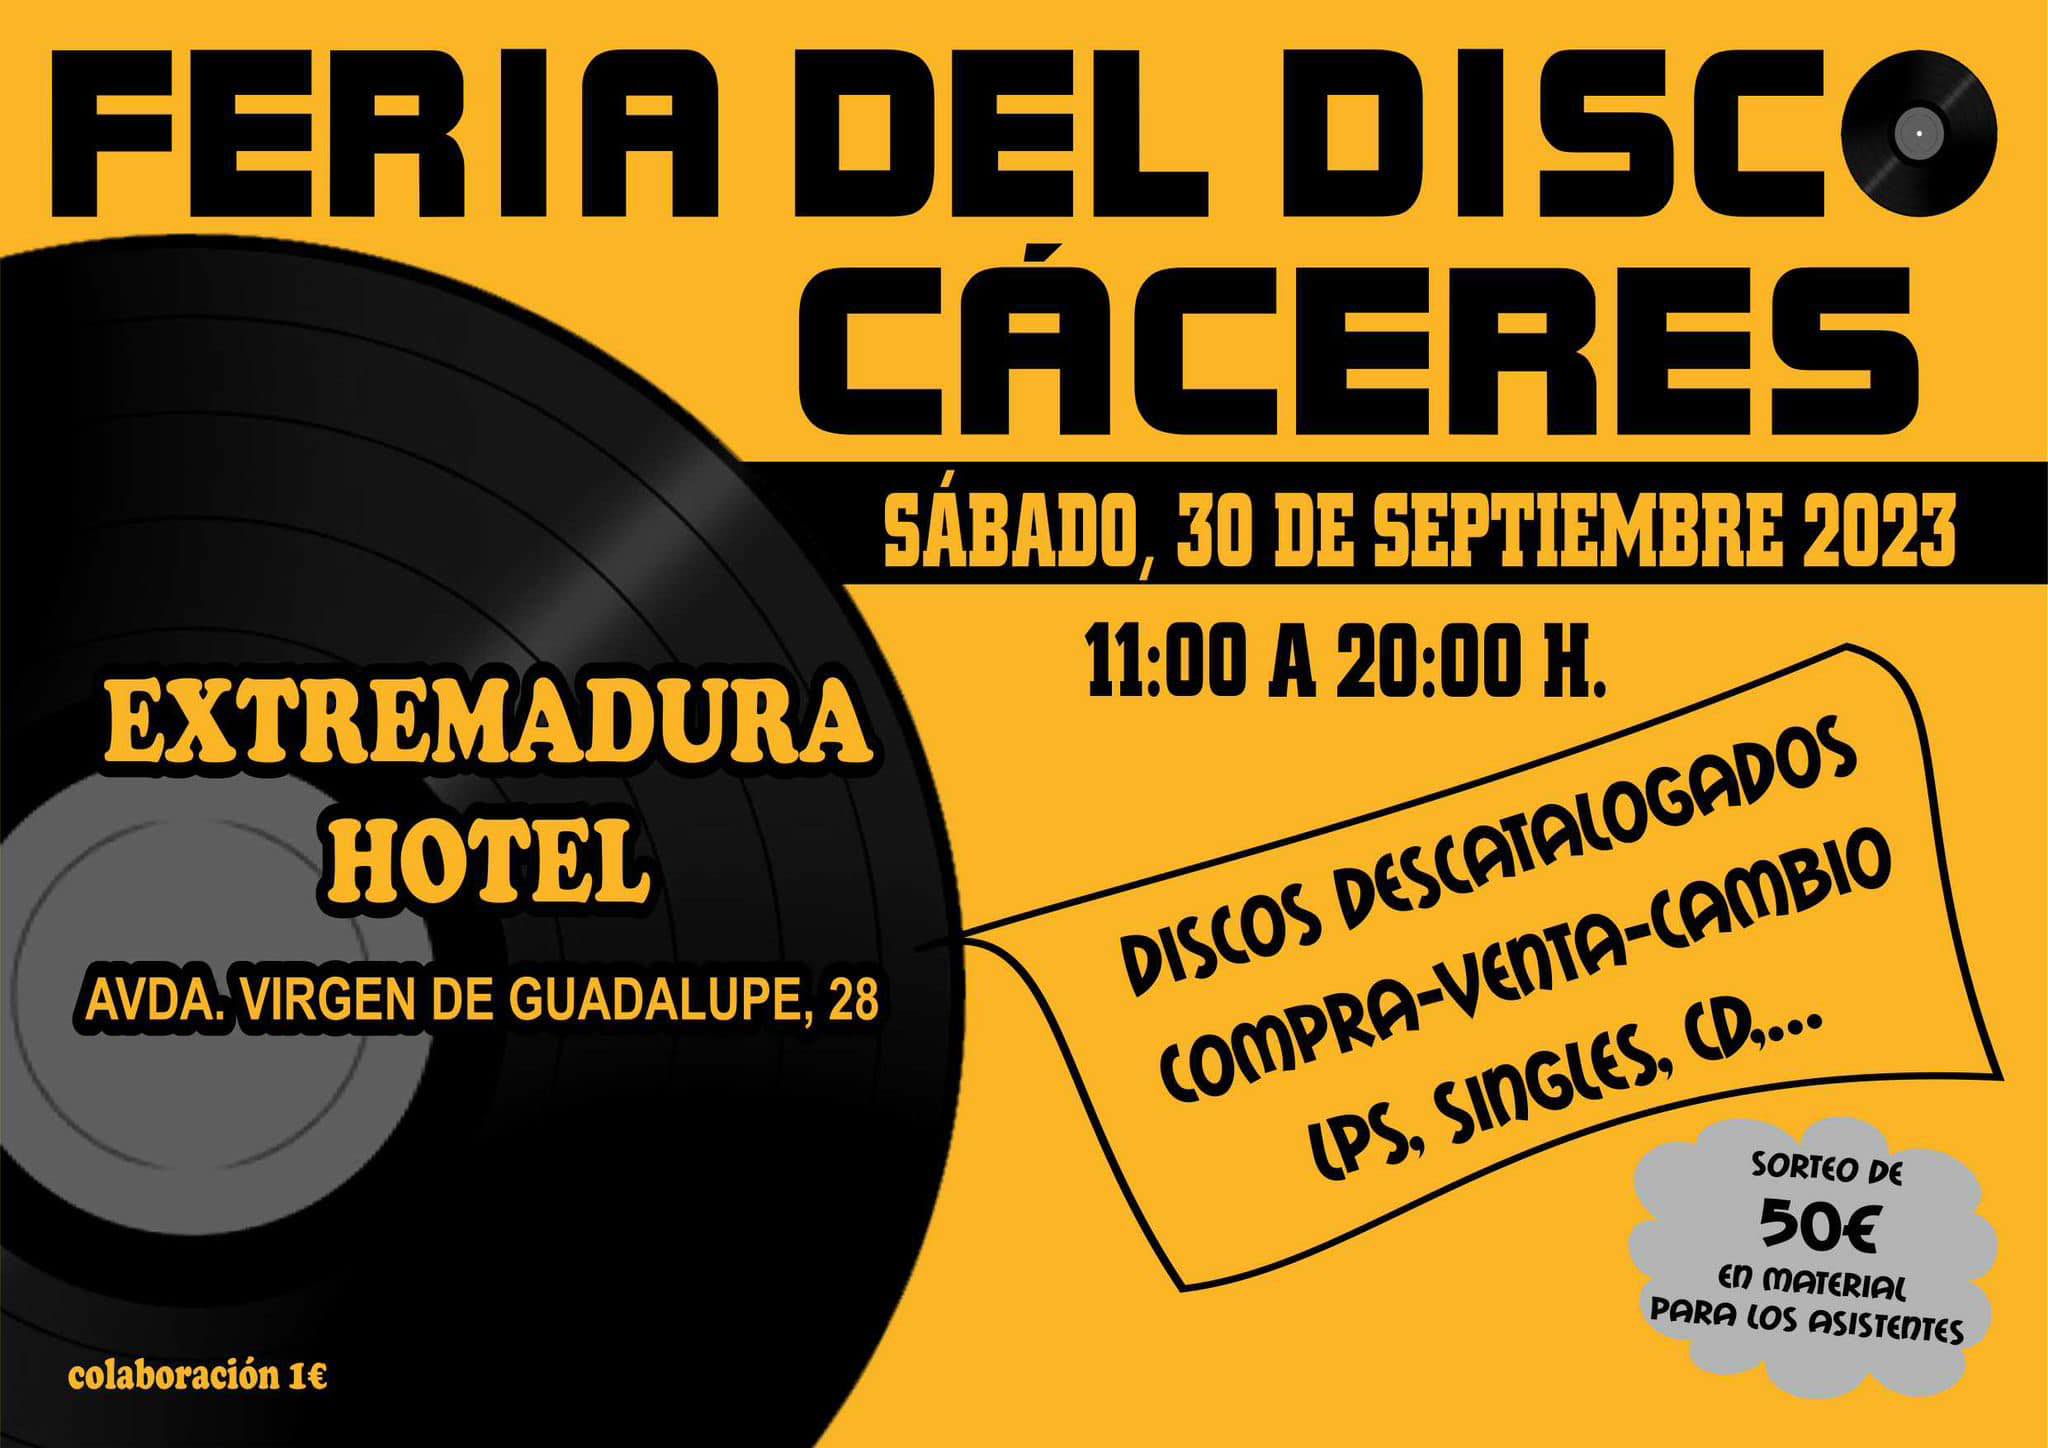 Feria de discos en Cáceres 